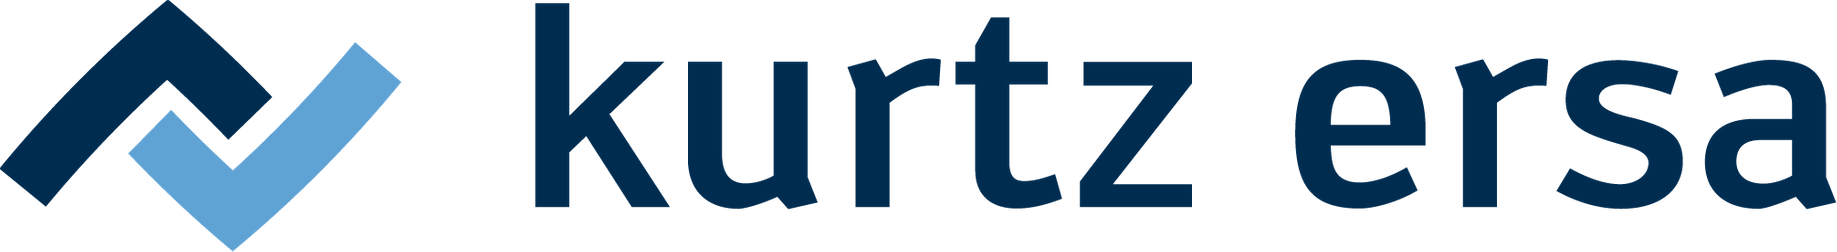 Kurtz-Ersa-Logo